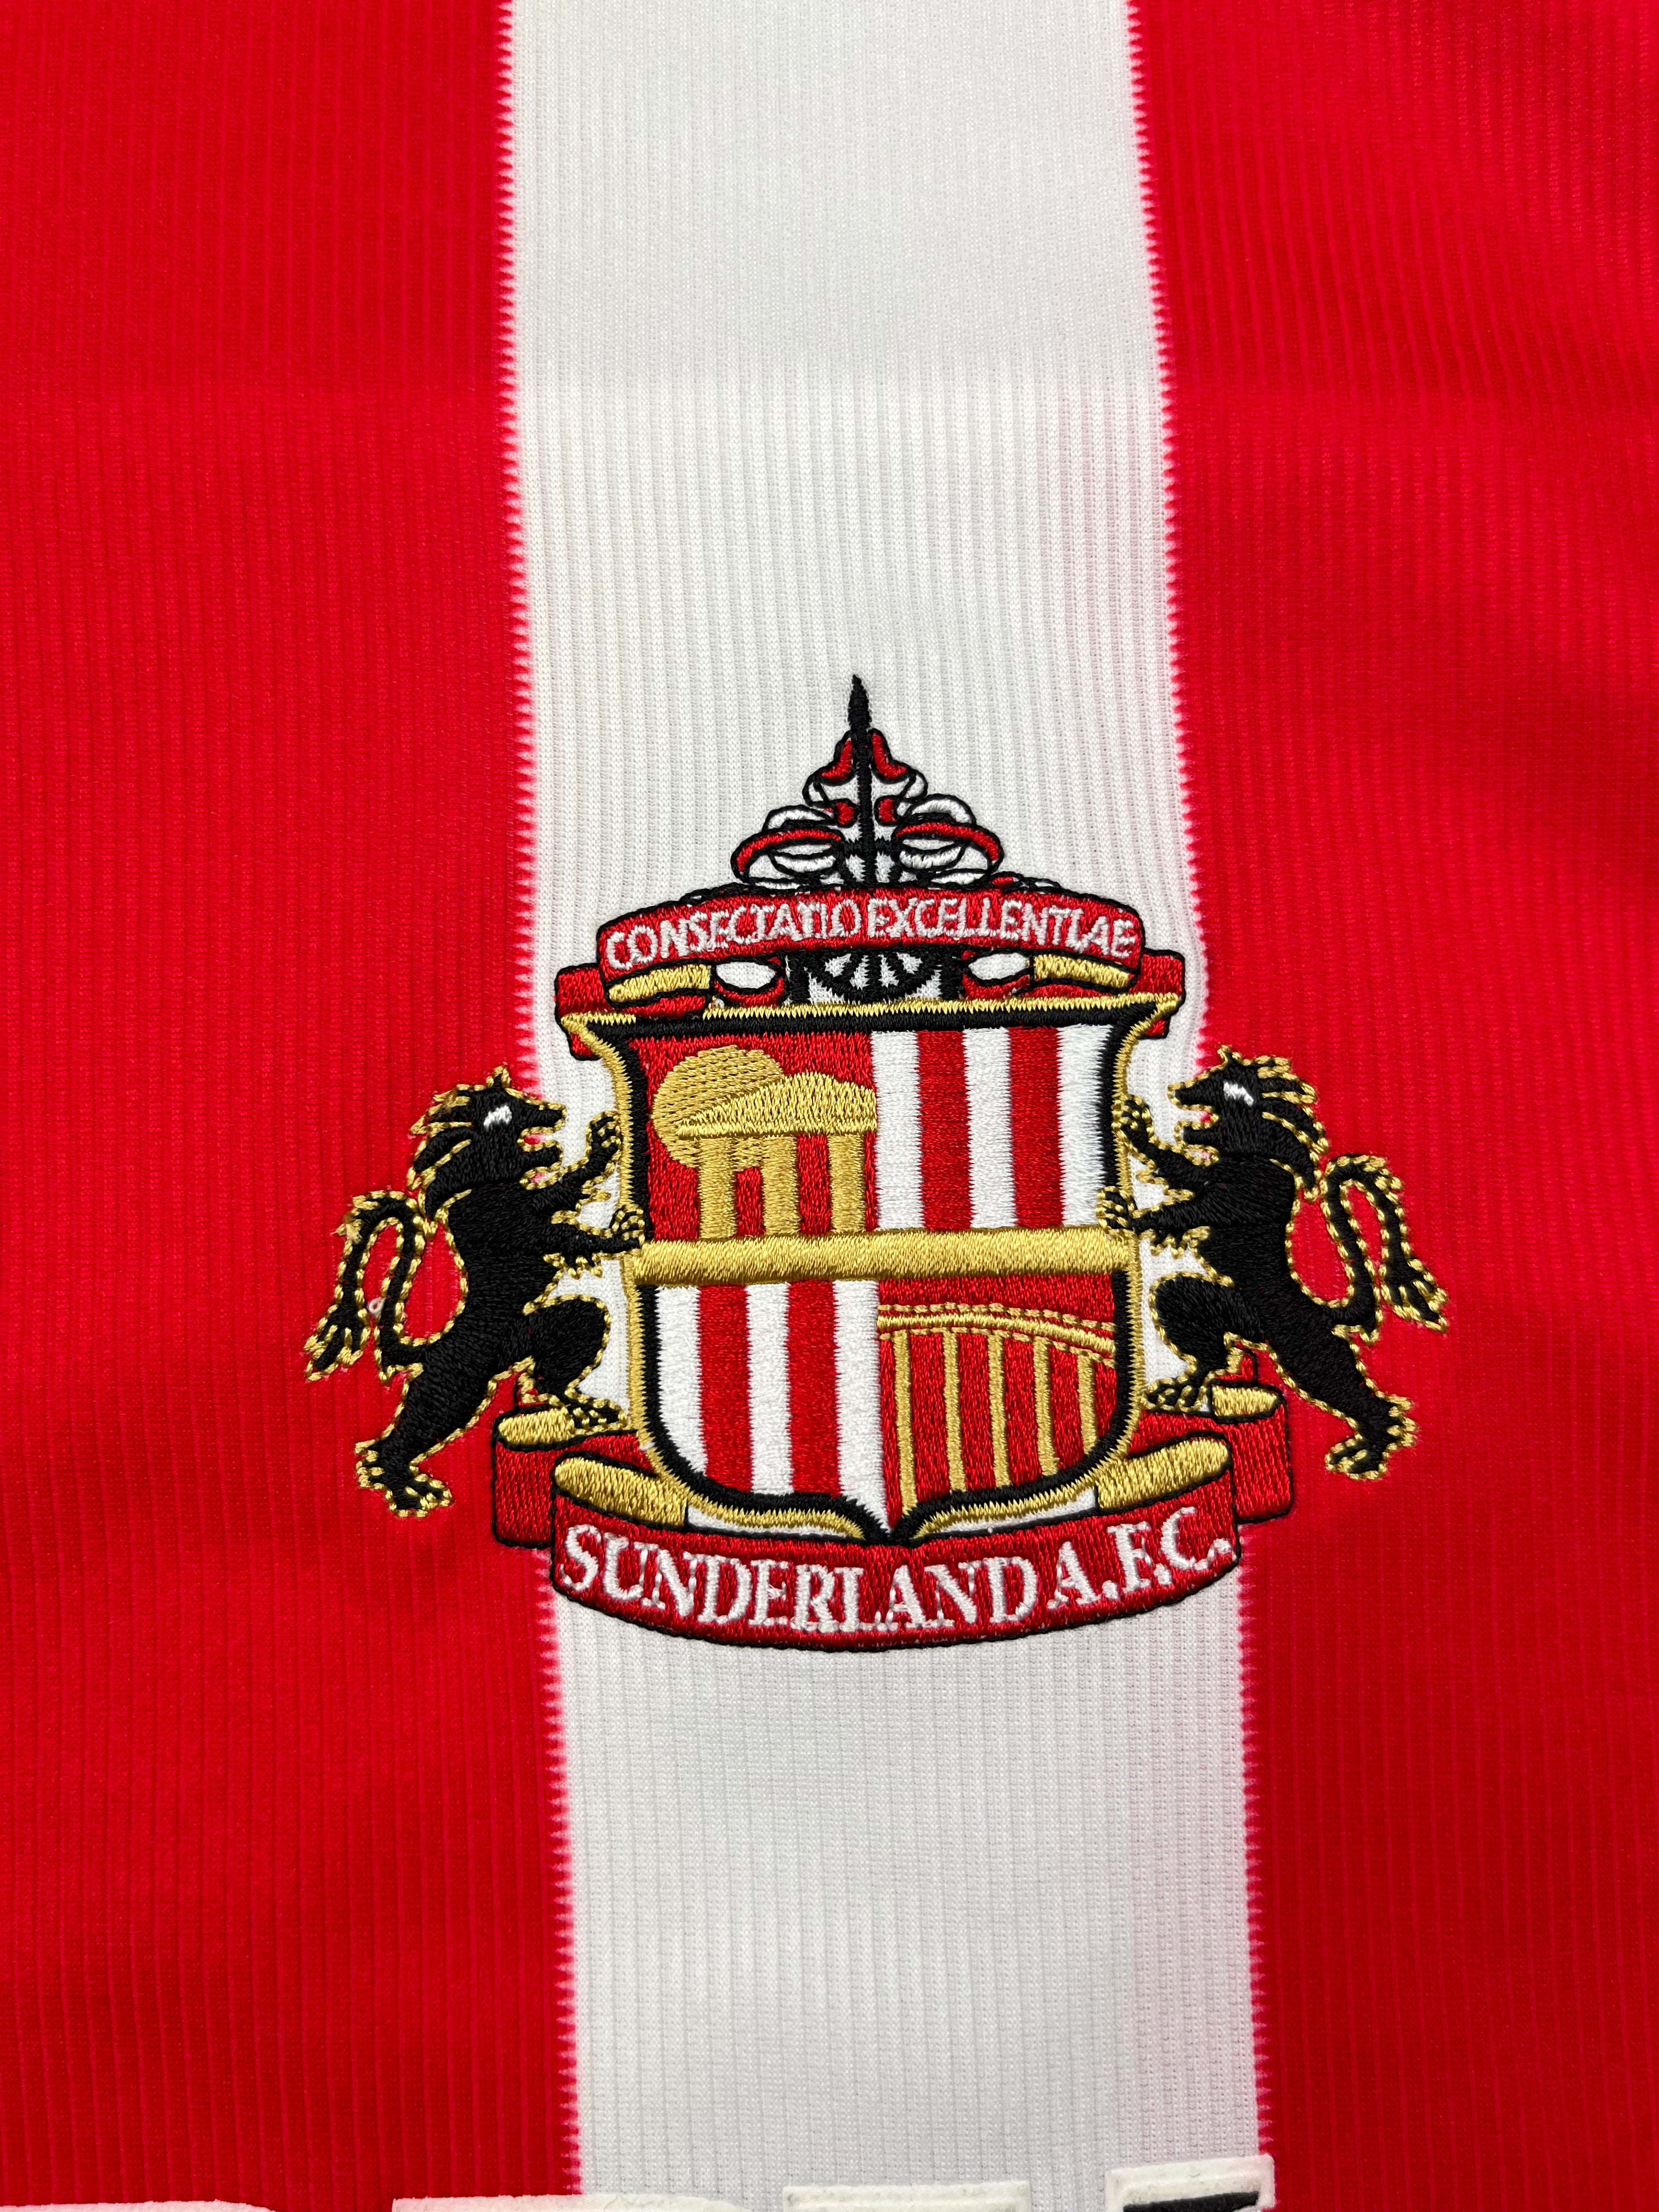 2004/05 Camiseta local del Sunderland L/S (L) 9/10